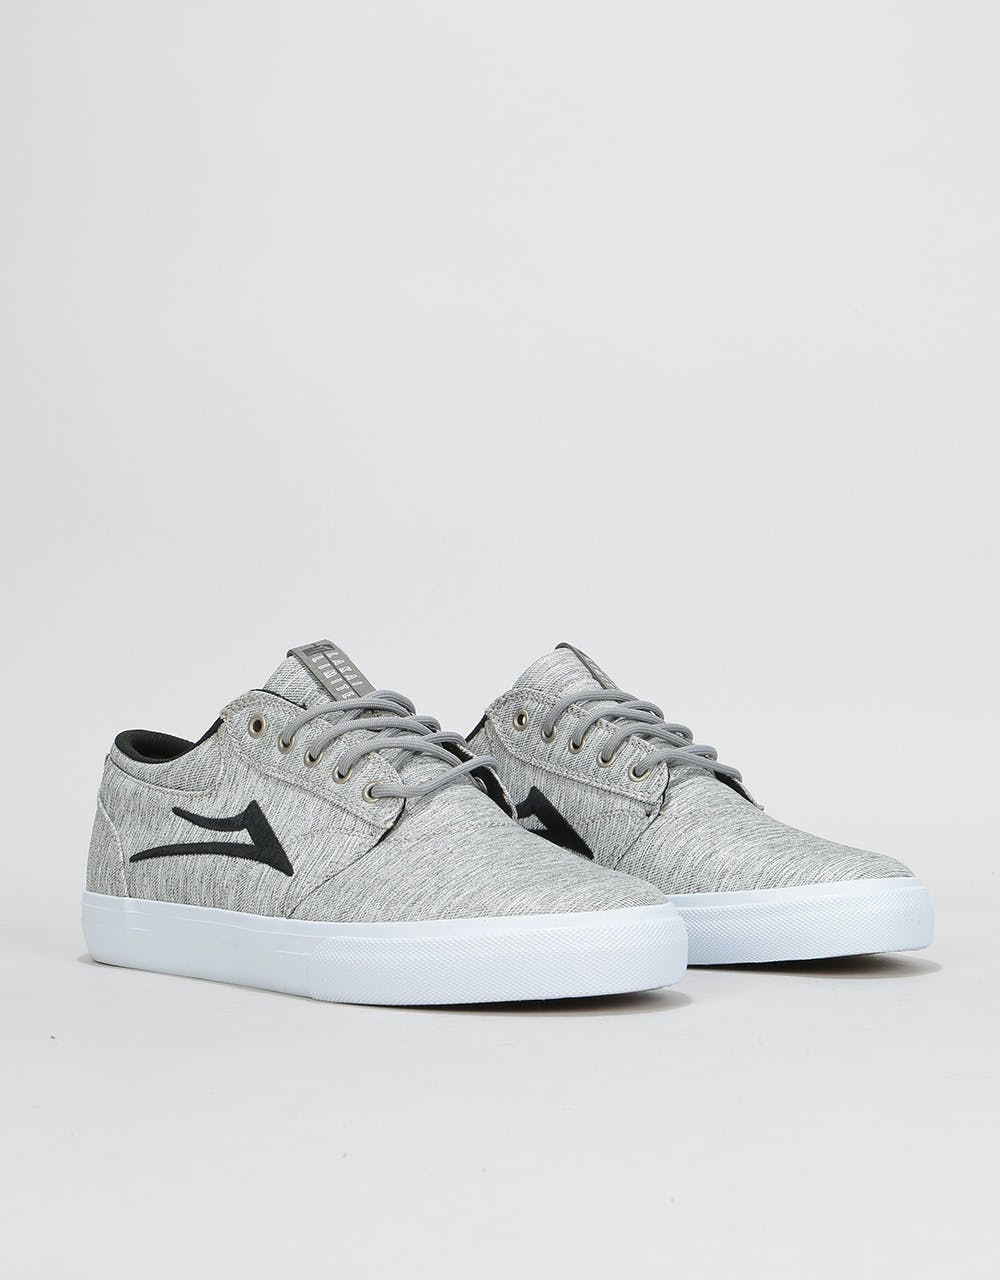 Lakai Griffin Skate Shoes - Grey/Black Textile